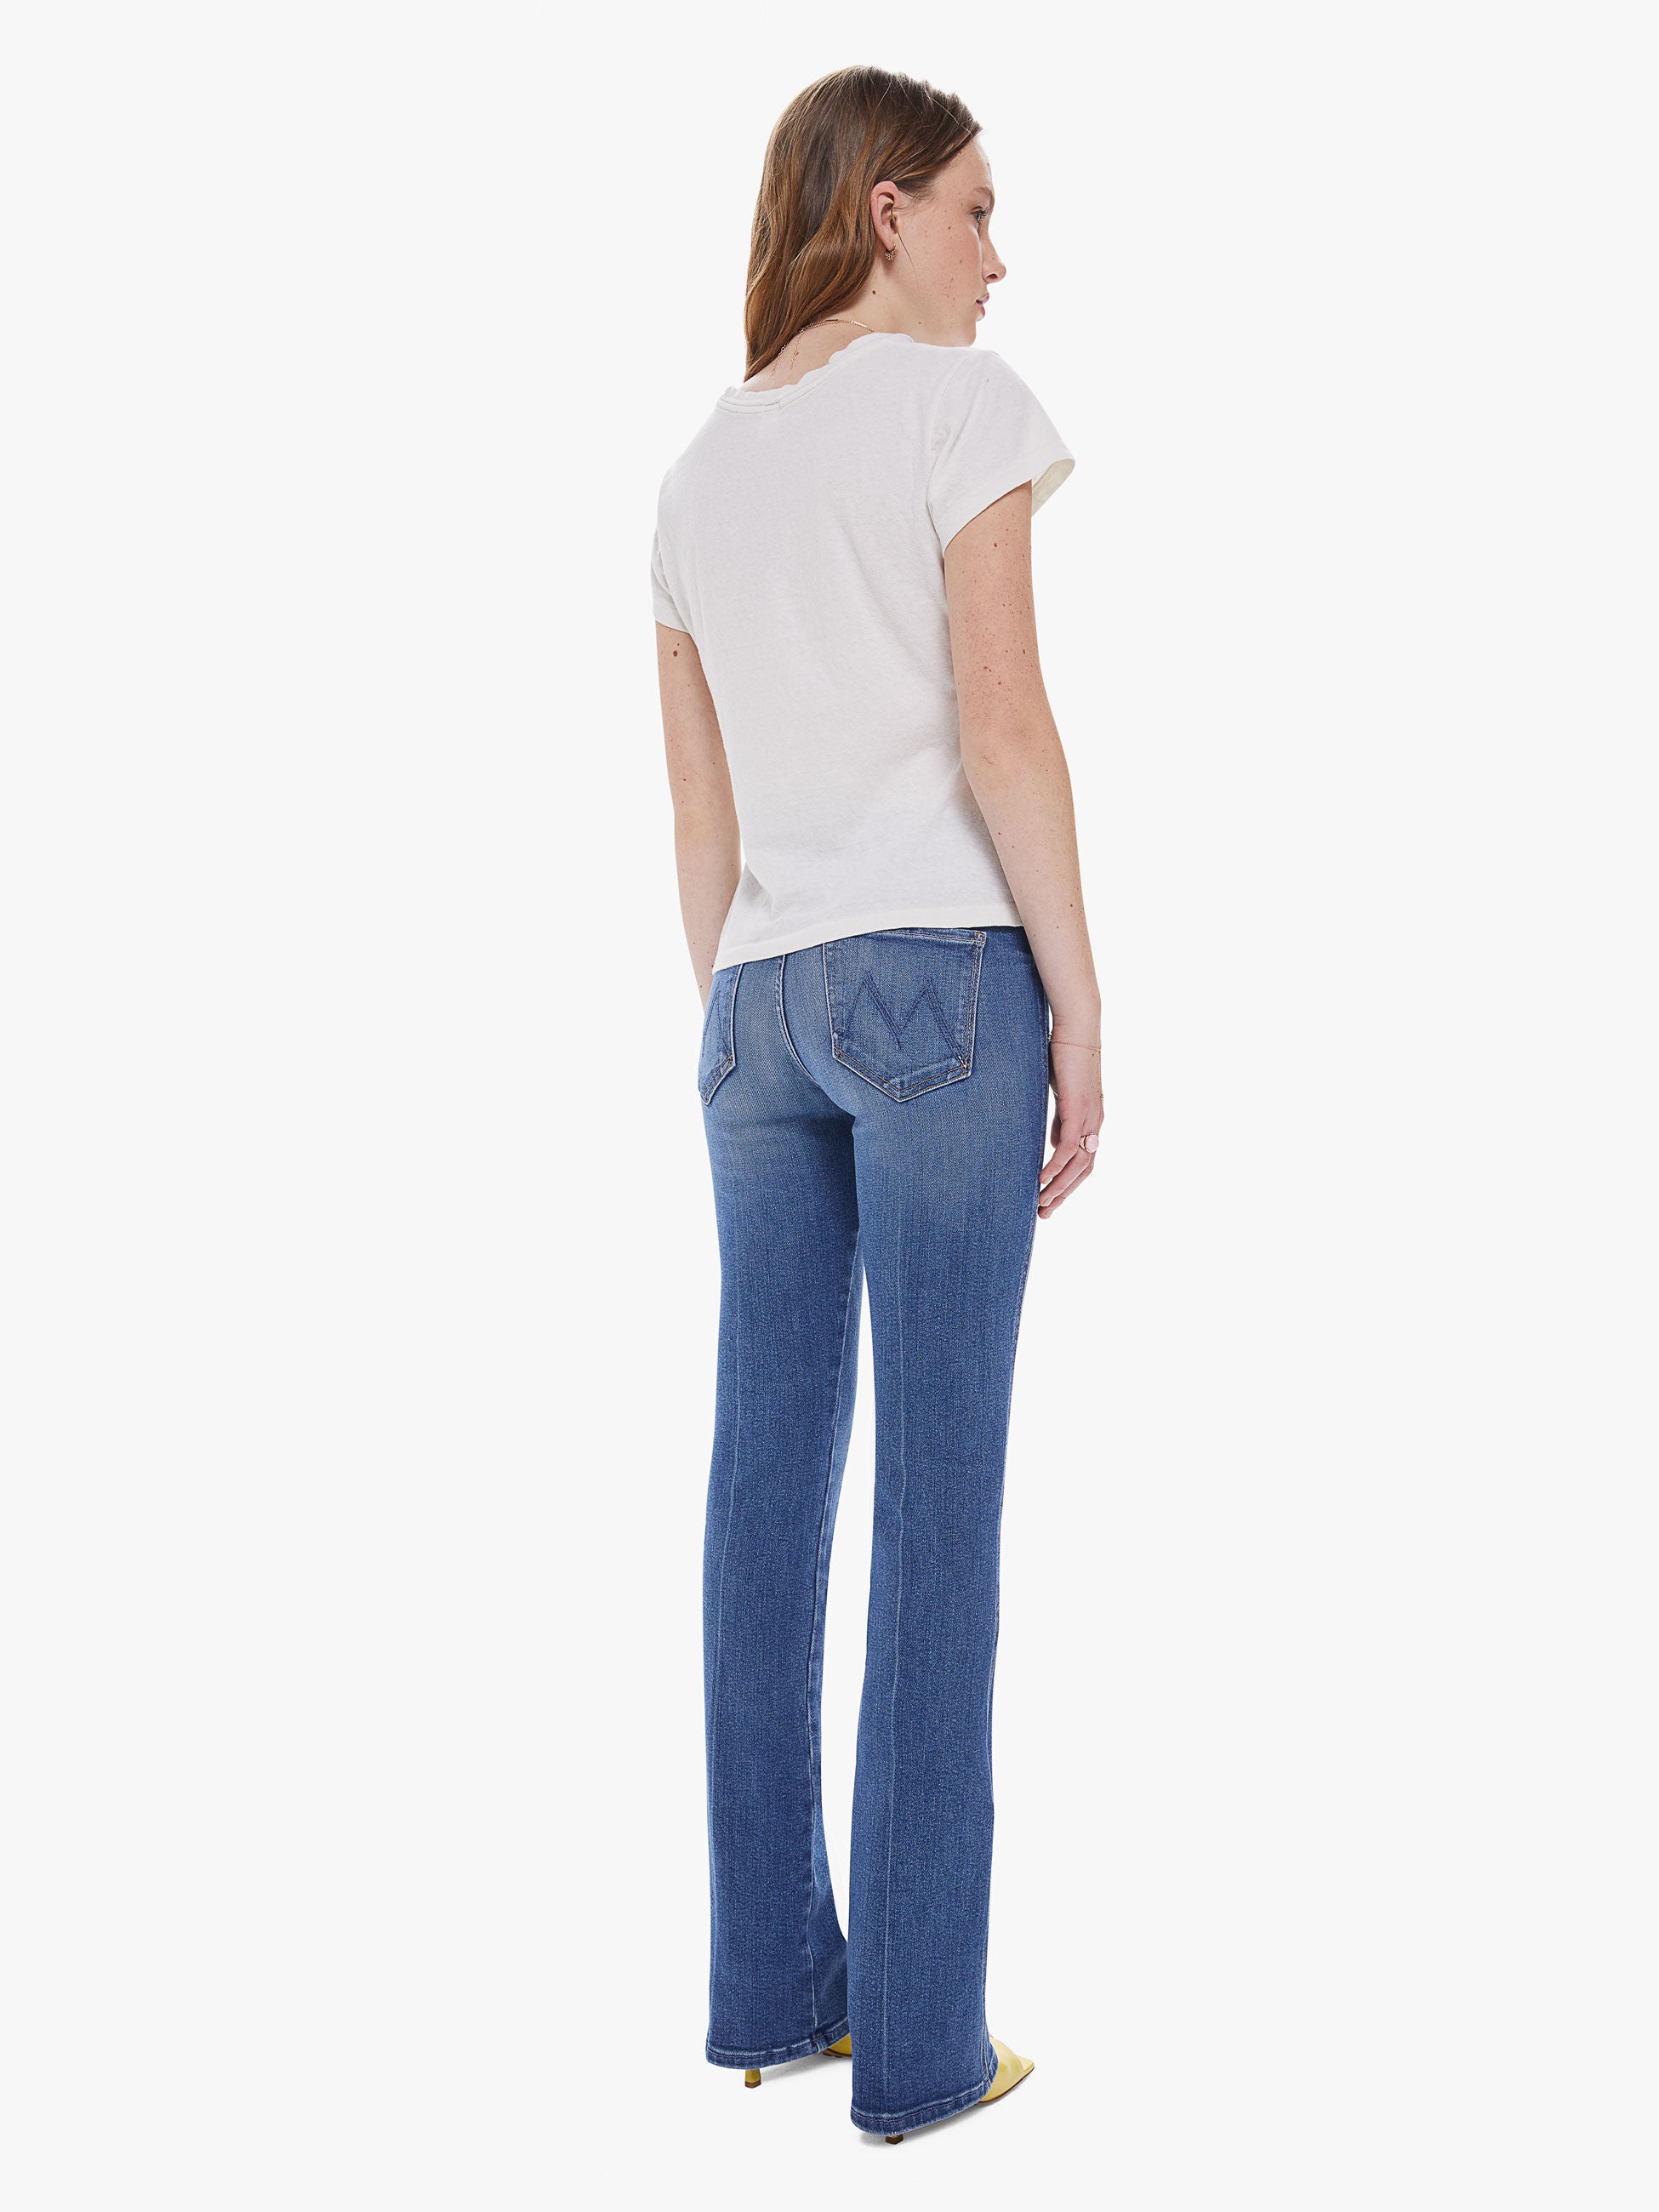 のサイズ CLANE - CLANE CENTER PRESS BOOTCUT PANTSの通販 by Tc's shop｜クラネならラクマ パンツ